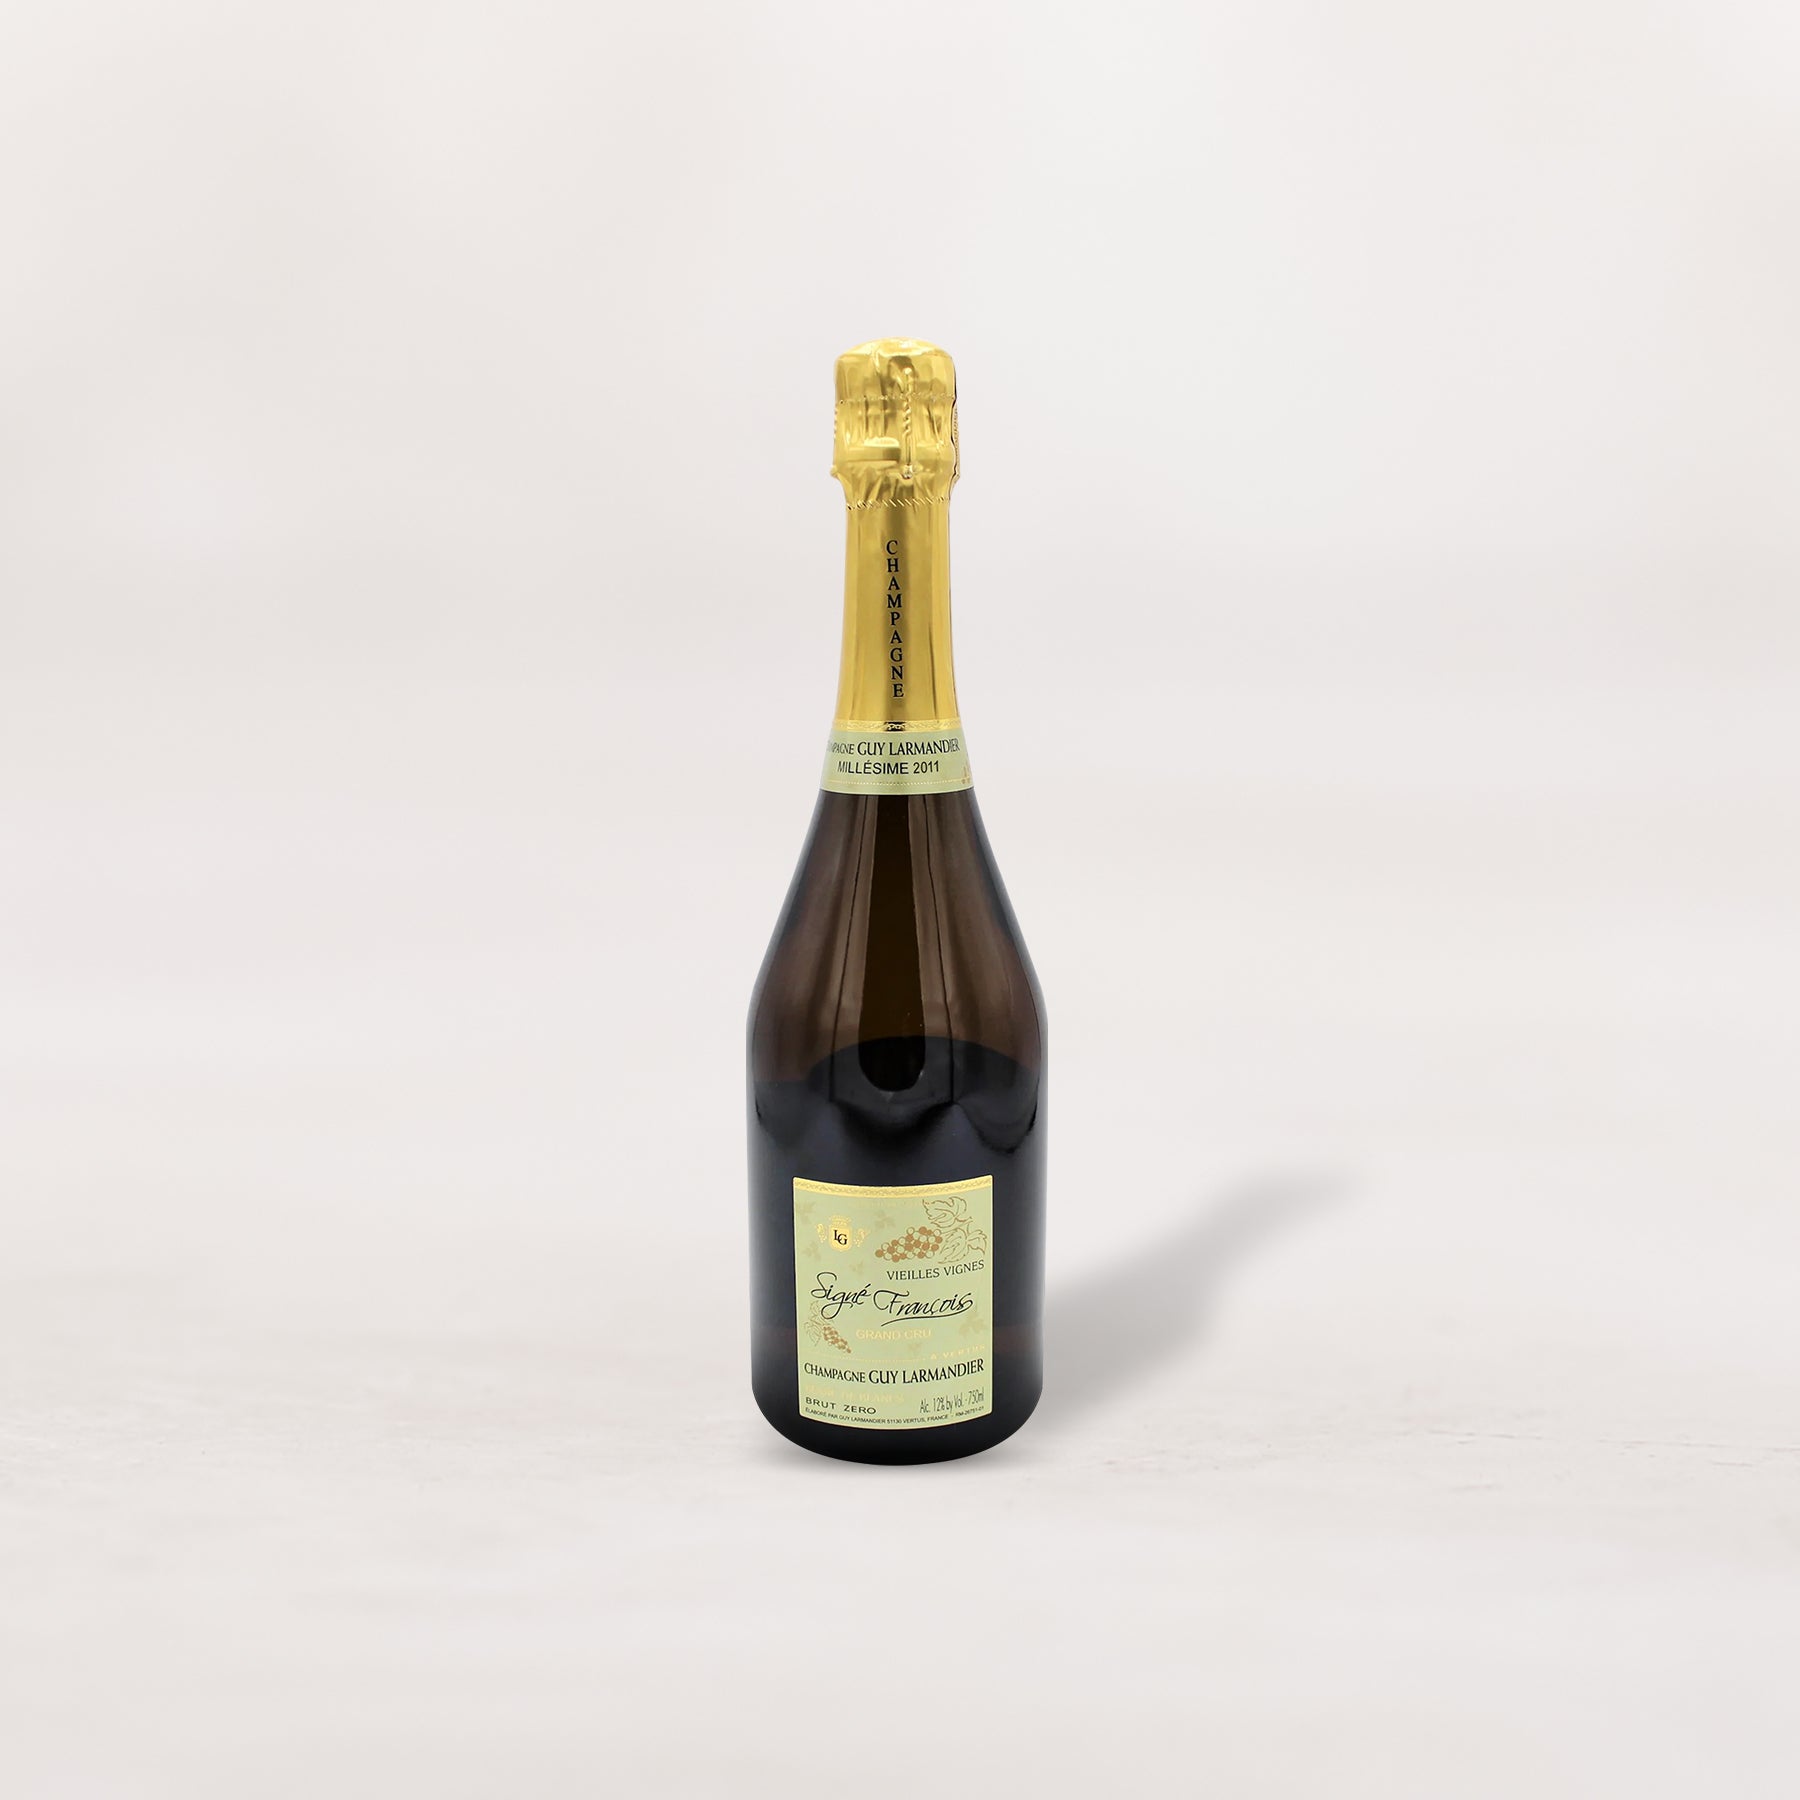 Guy Larmandier, Champagne Grand Cru Blanc de Blancs Brut Zero "Cuvée Signé François" Vieille Vignes